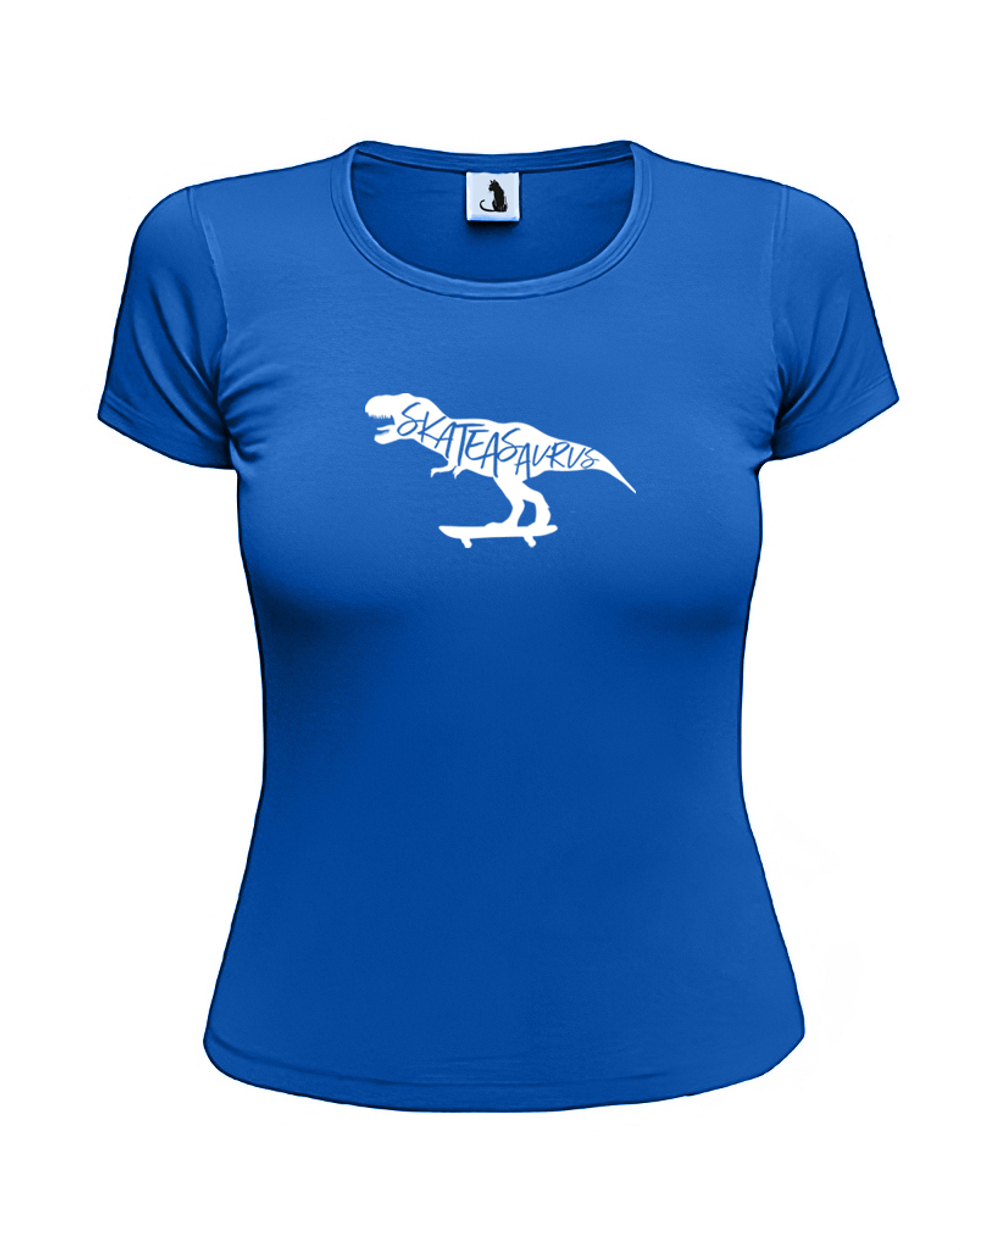 Футболка Skateasaurus женская приталенная синяя с белым рисунком